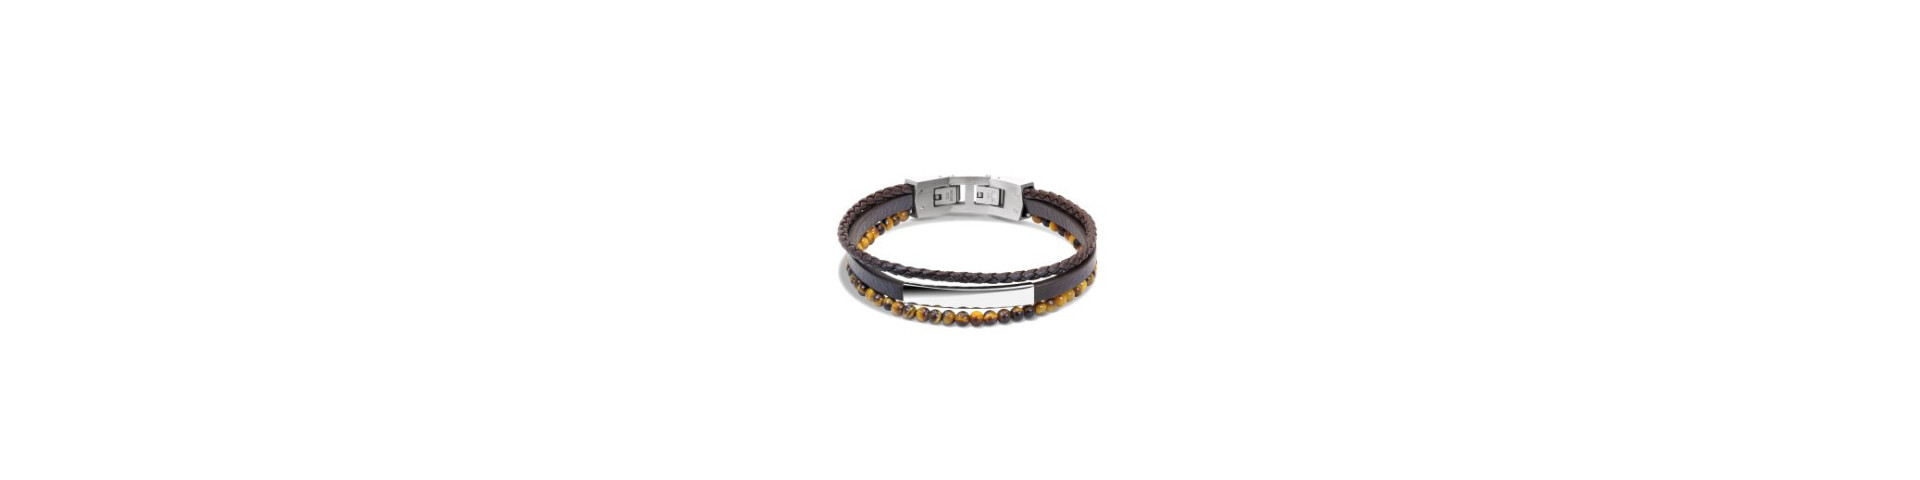 Bracelets pour homme en cuir, argent, Or 750, perles tahiti, pierres